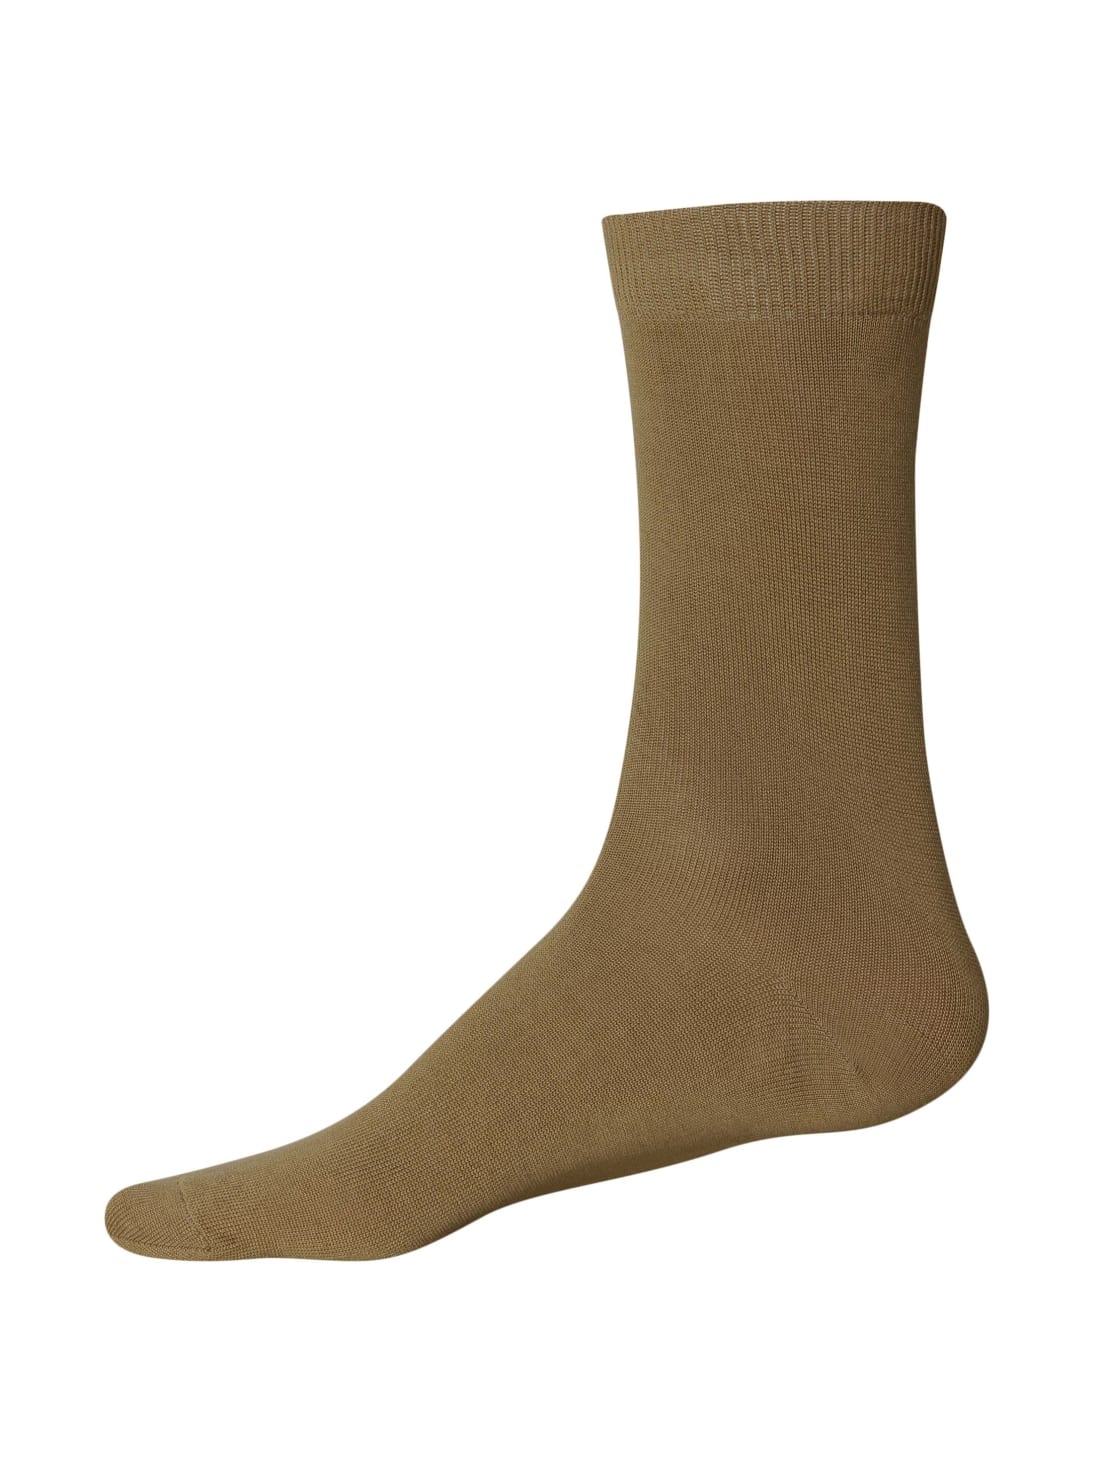 Men's Brown Calf Length Socks